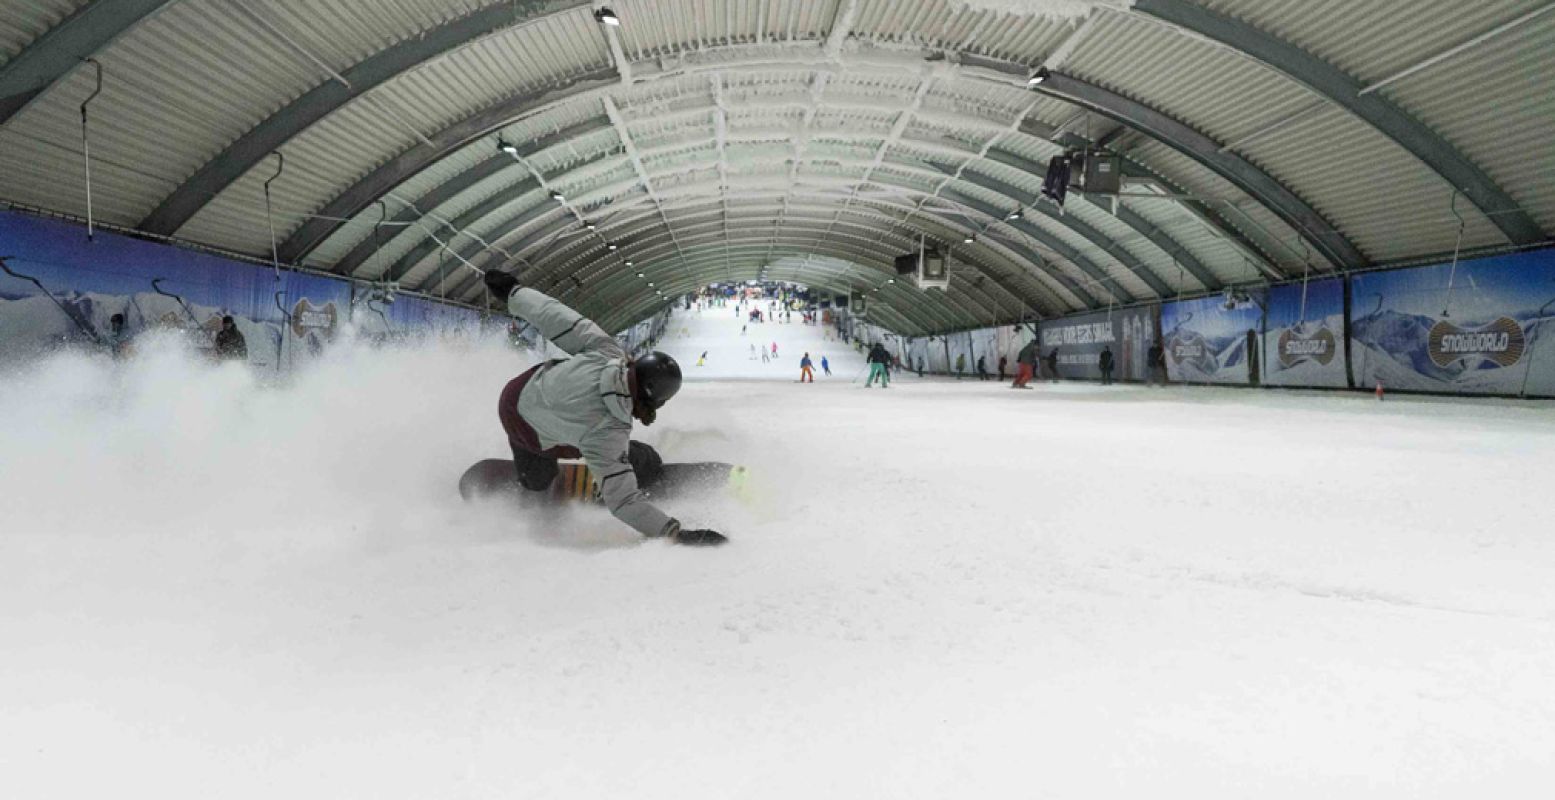 Liever leren snowboarden? In de meeste indoor skihallen kan dat ook. Foto: SnowWorld.